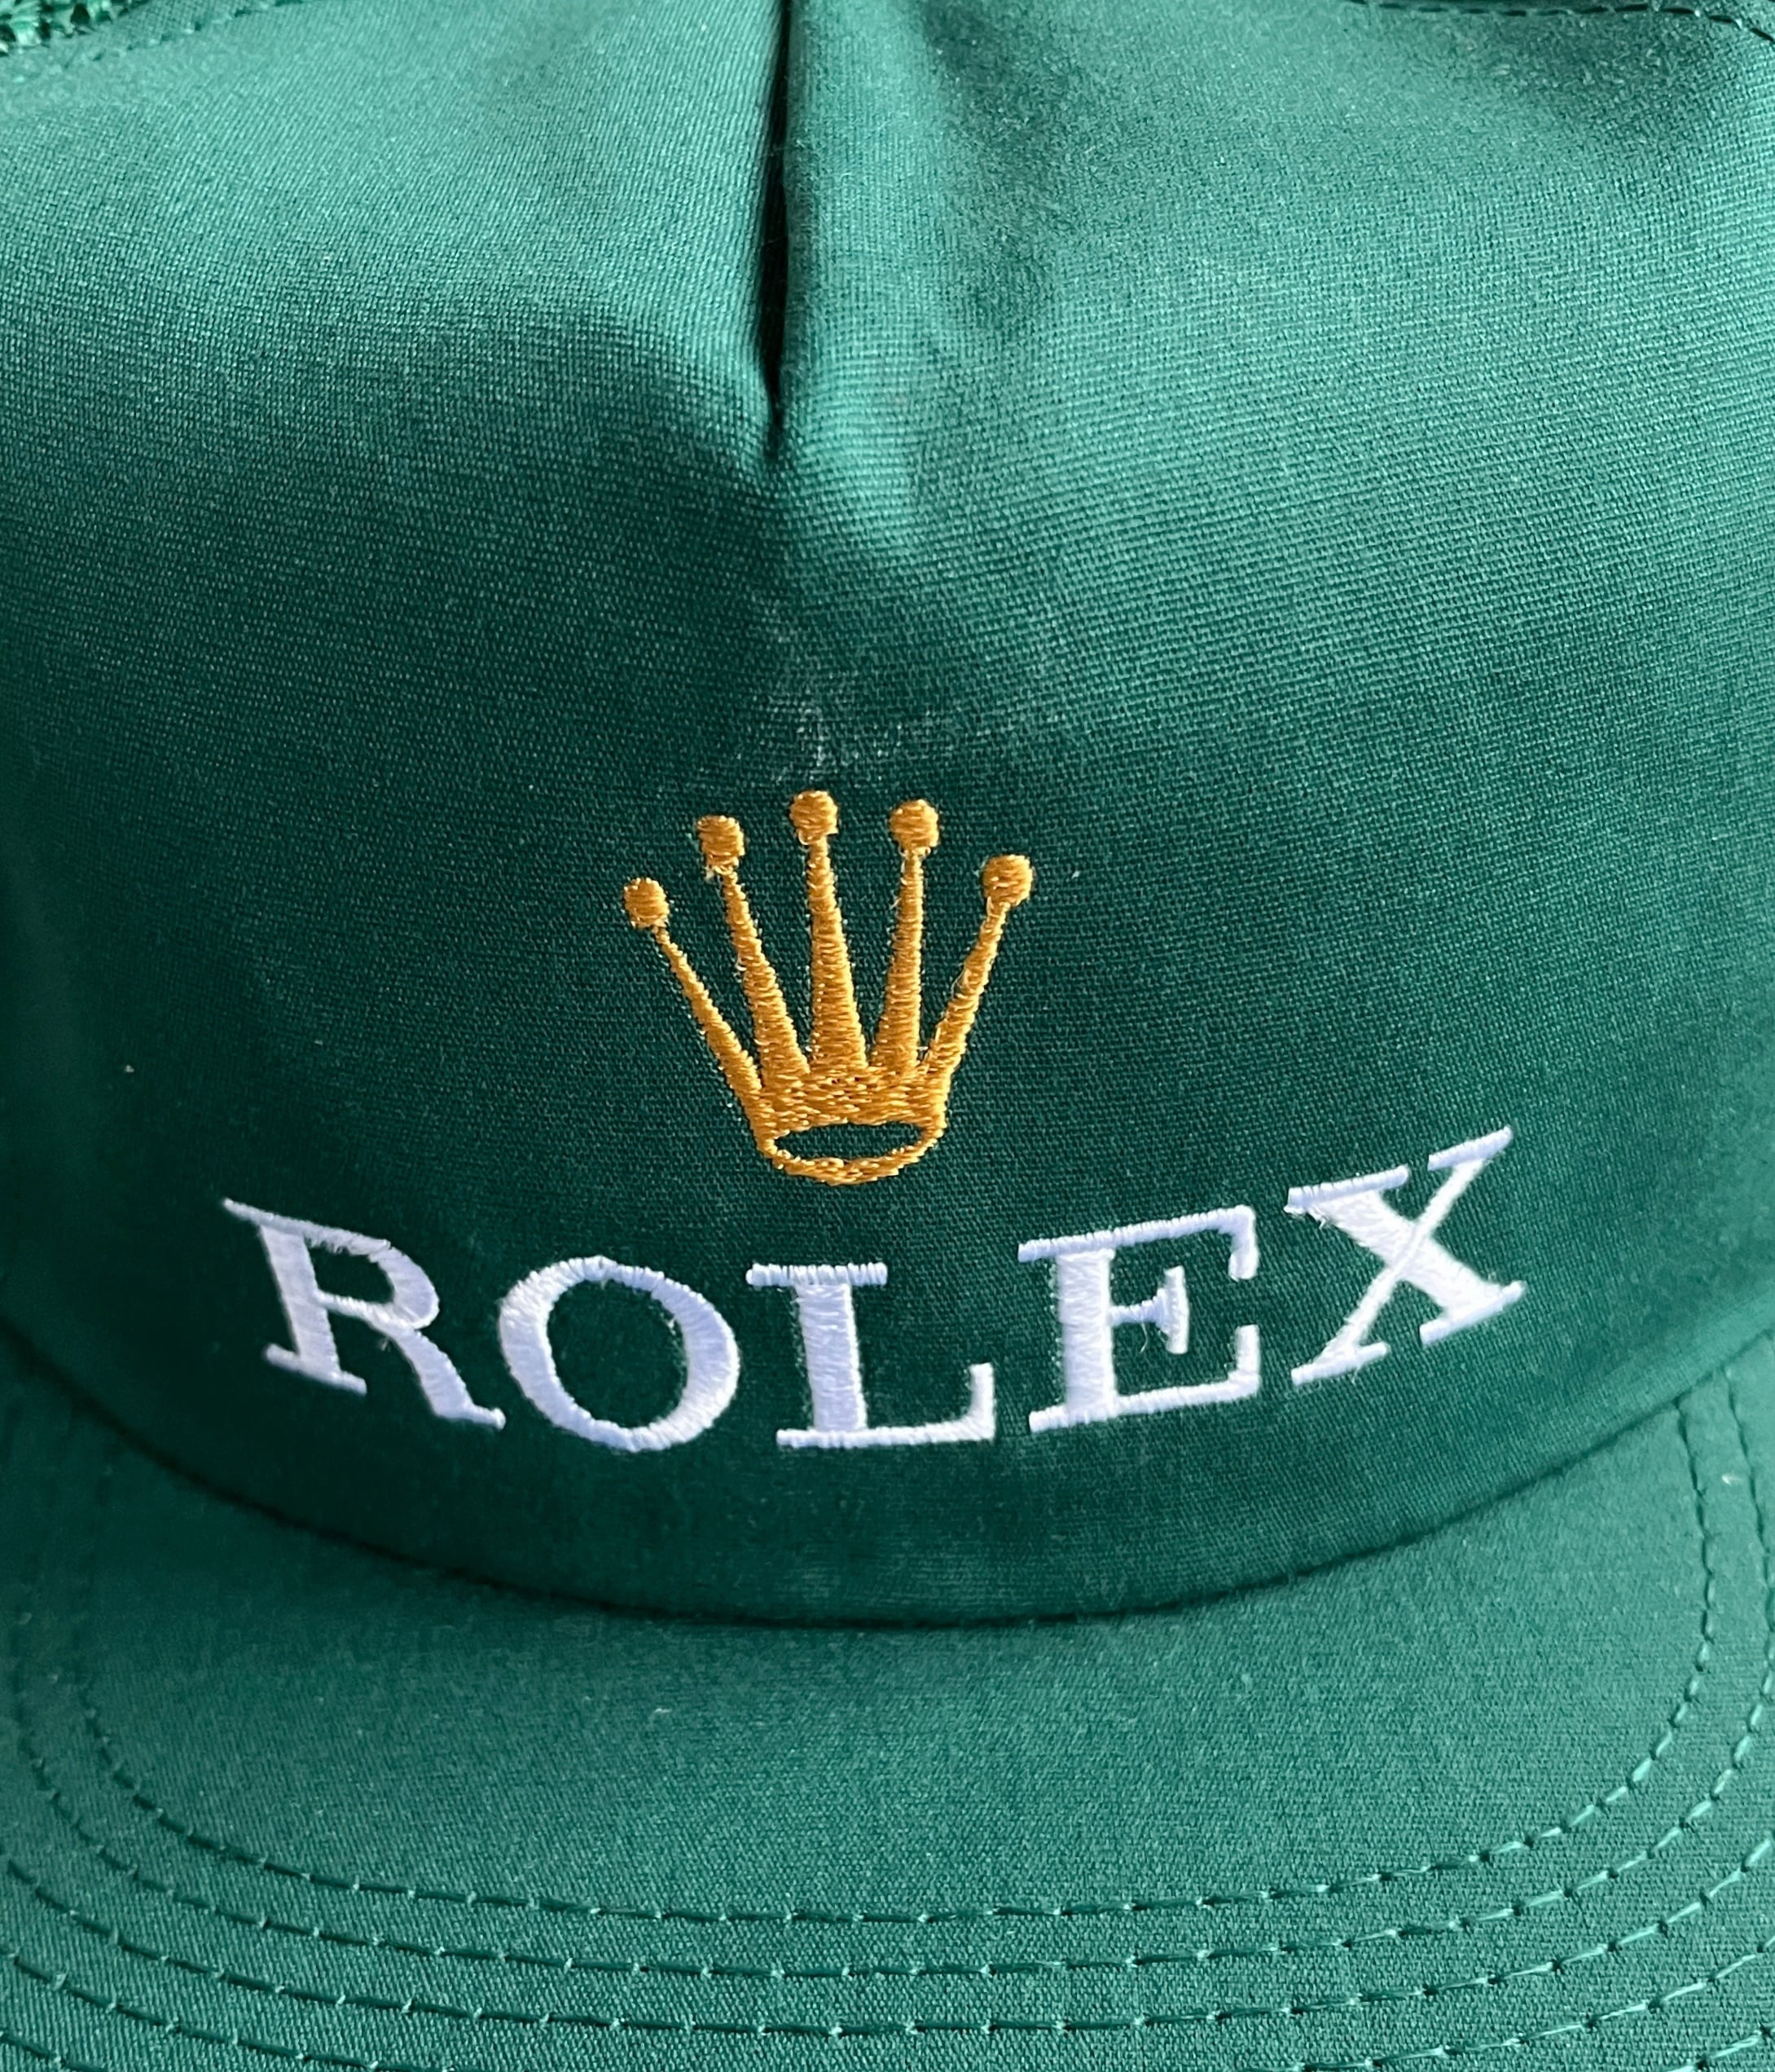 90s ロレックス キャップ デッドストック - 帽子